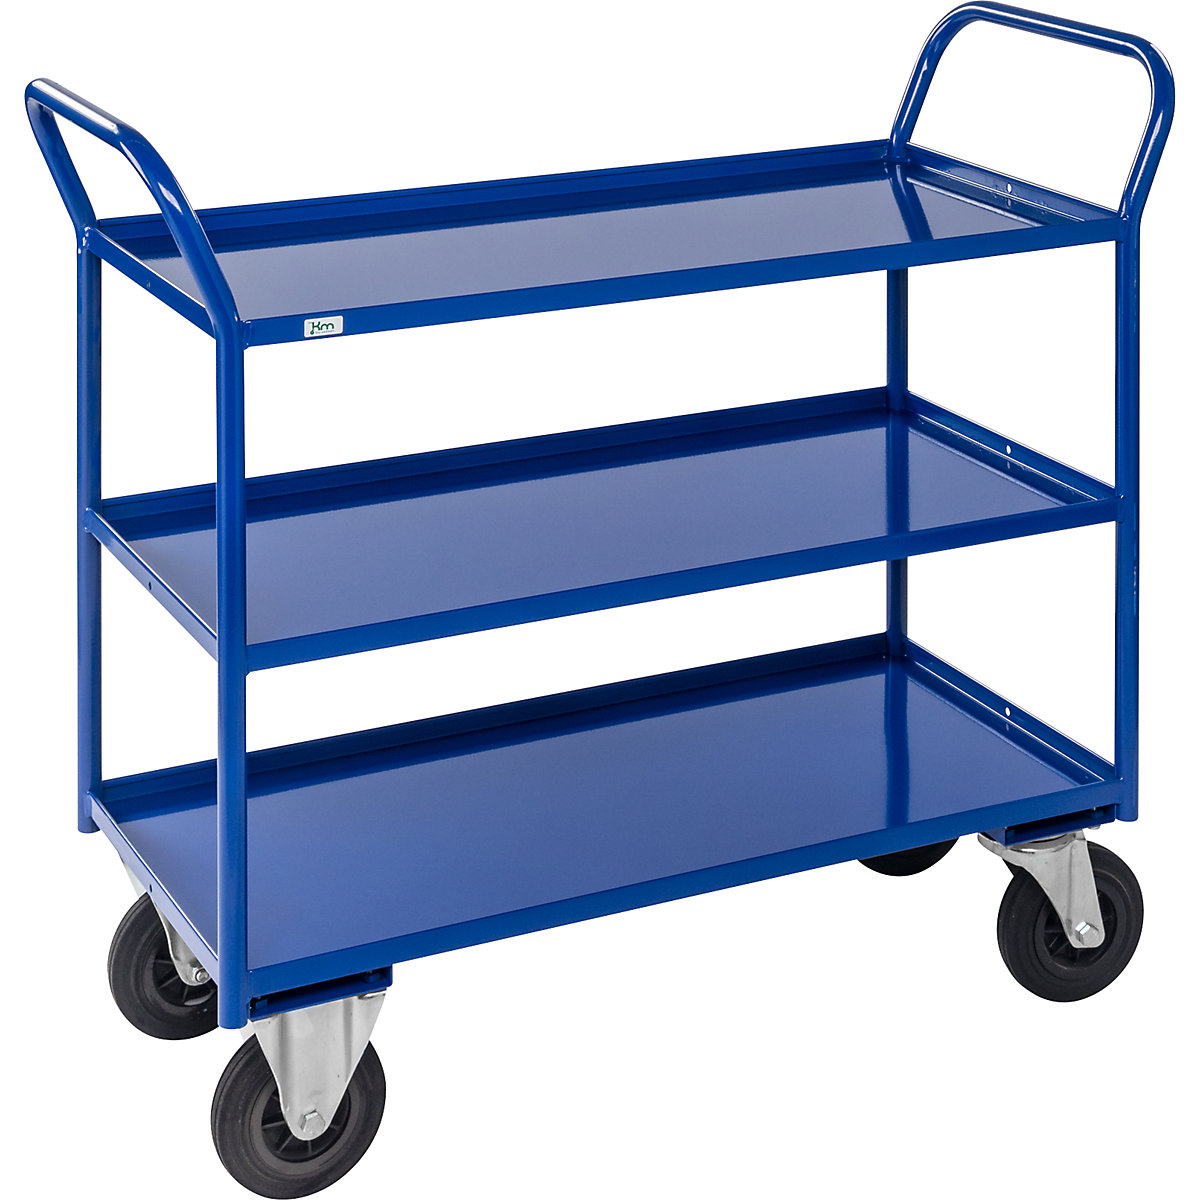 Stolový vozík KM41 – Kongamek, 3 poschodia s ohranením, d x š x v 1070 x 550 x 1000 mm, modrá, 2 otočné kolieska s brzdou, 2 pevné kolieska, od 5 ks-4